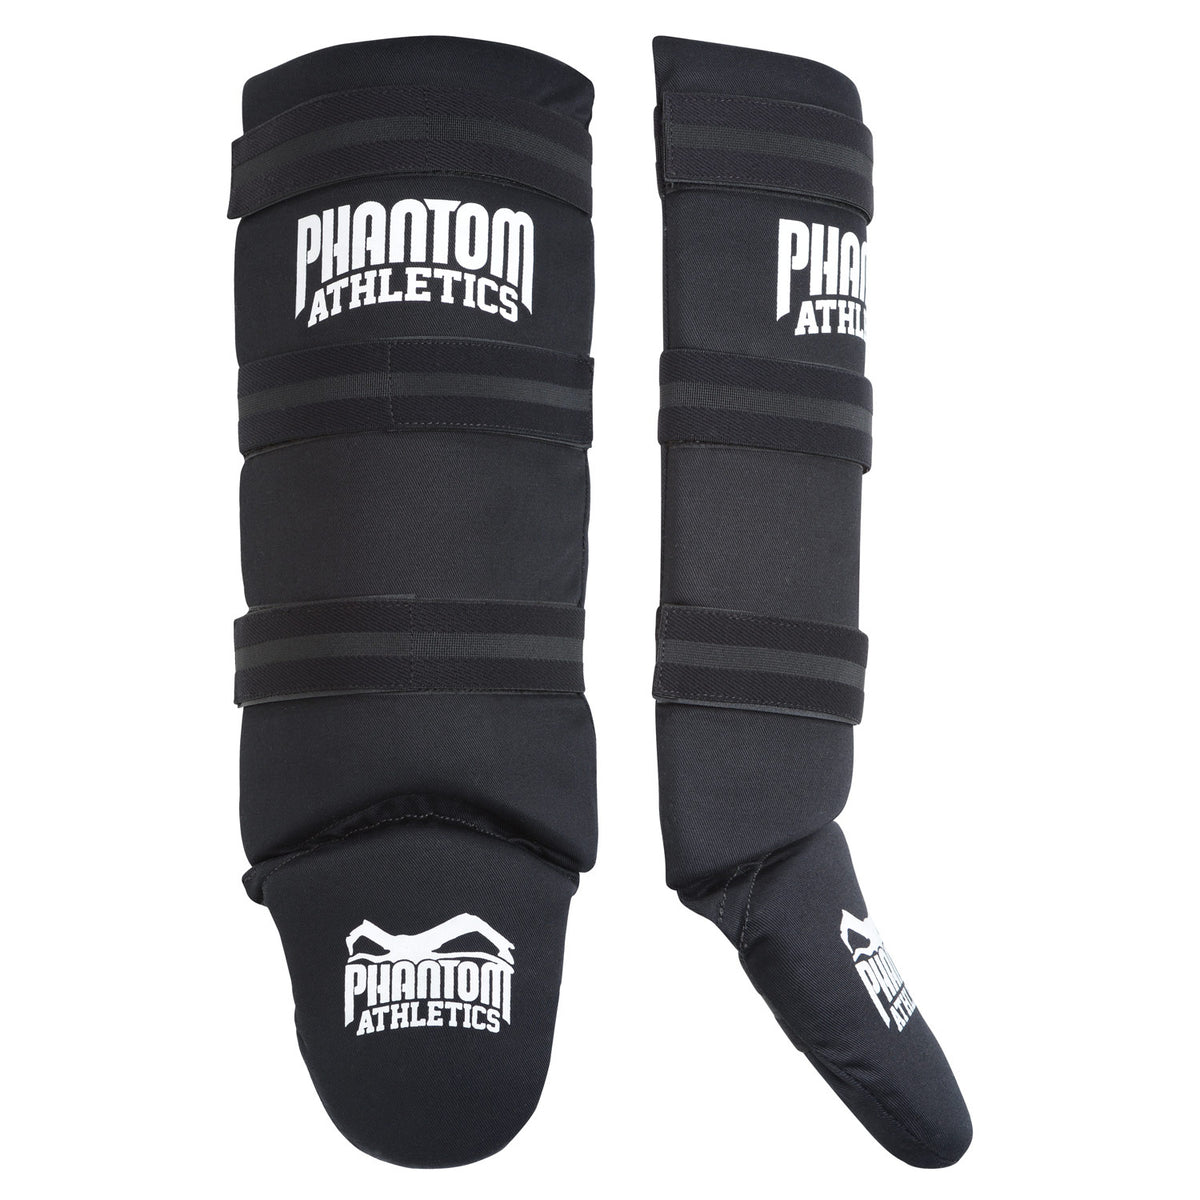 Protège-tibias Phantom pour arts martiaux Impact Basic avec rembourrage en mousse épaisse